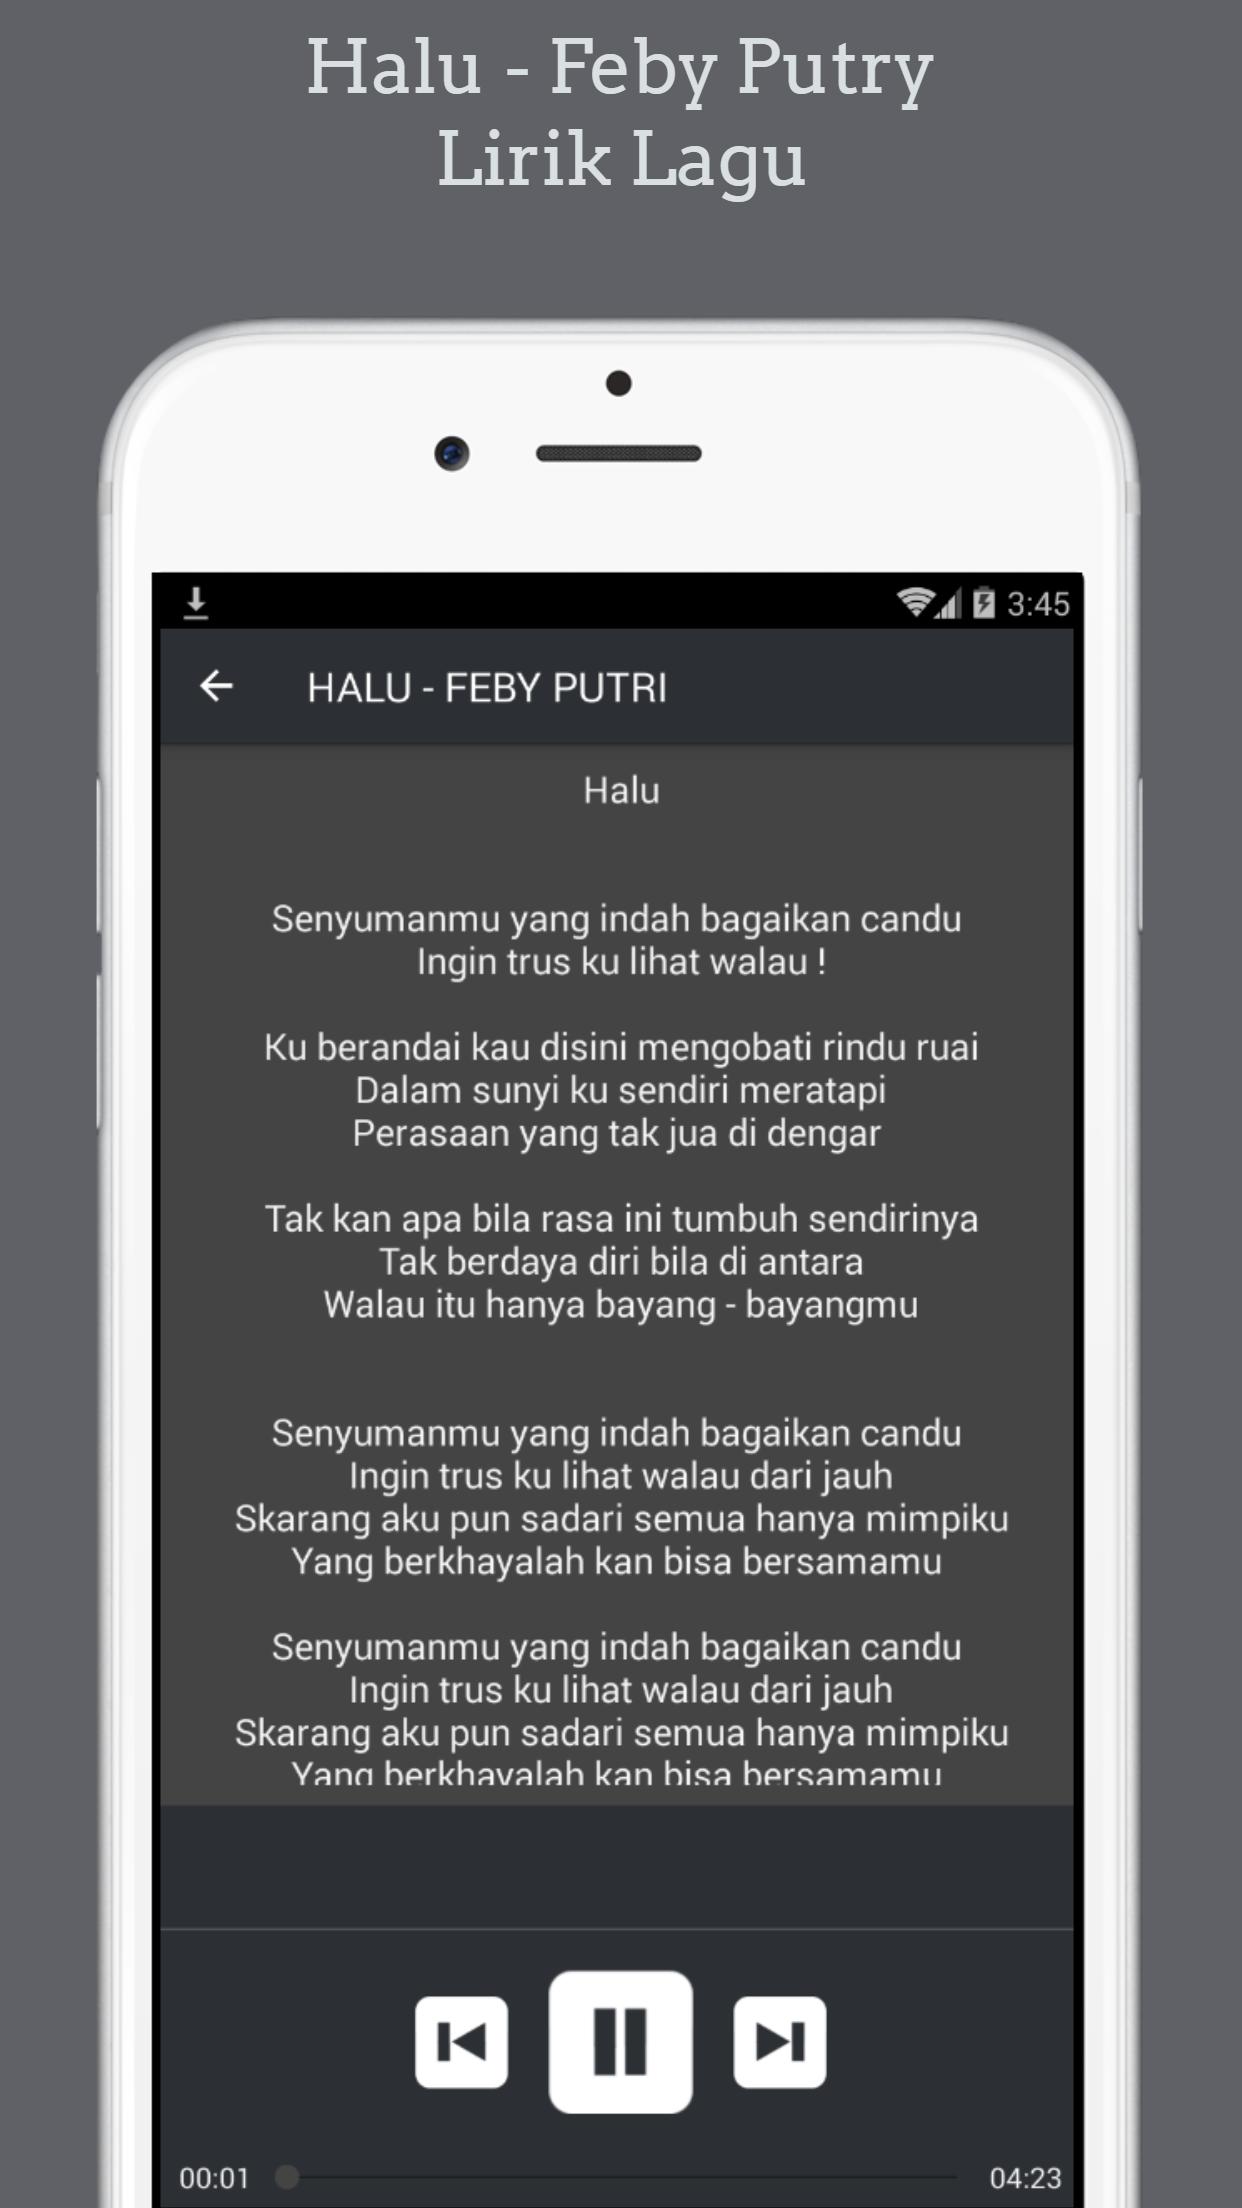 Feby Putri Halu Lirik Lagu For Android Apk Download